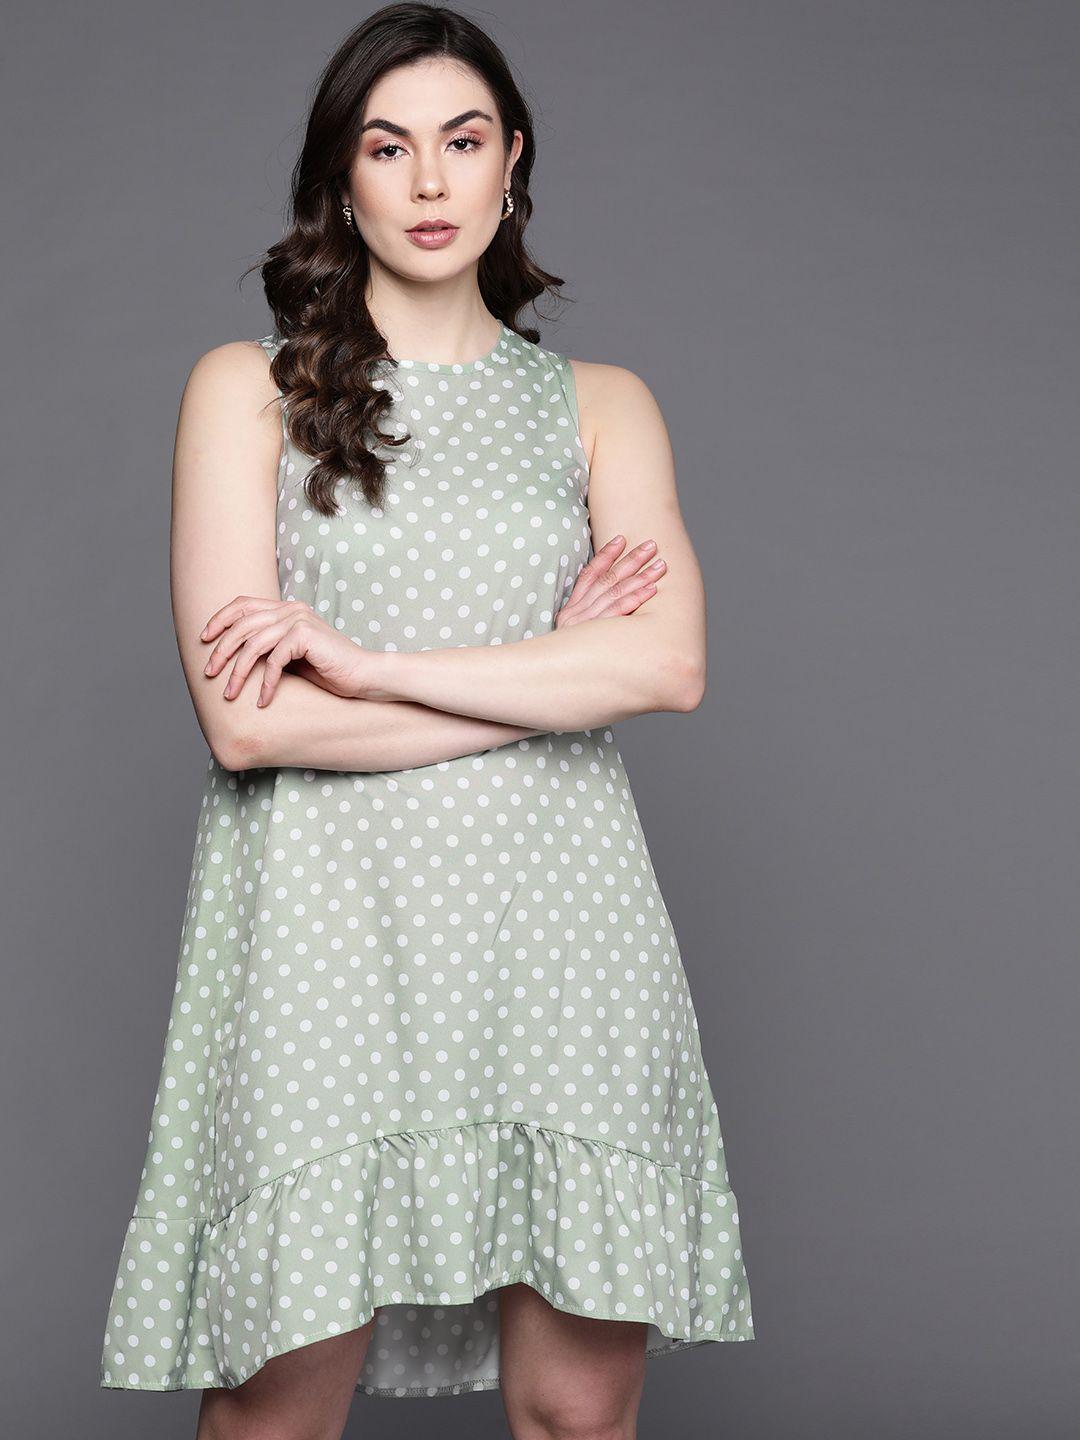 jc-mode-green-&-white-polka-dot-printed-a-line-dress